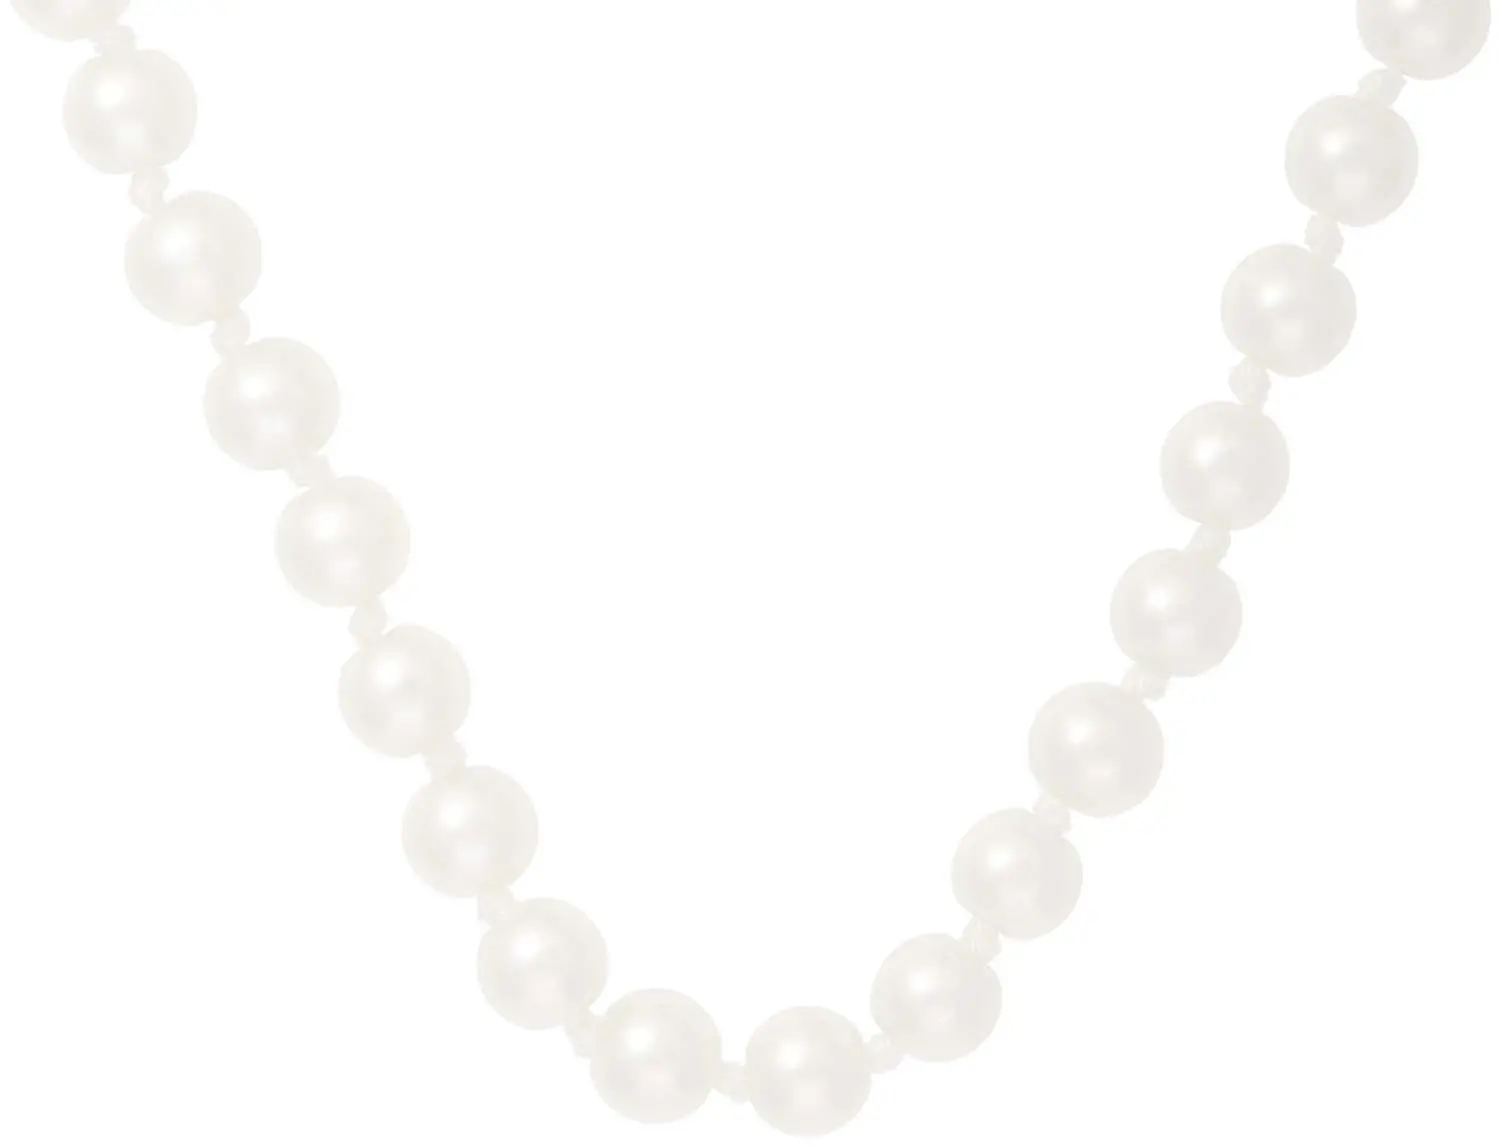 Collar - Serene Pearls